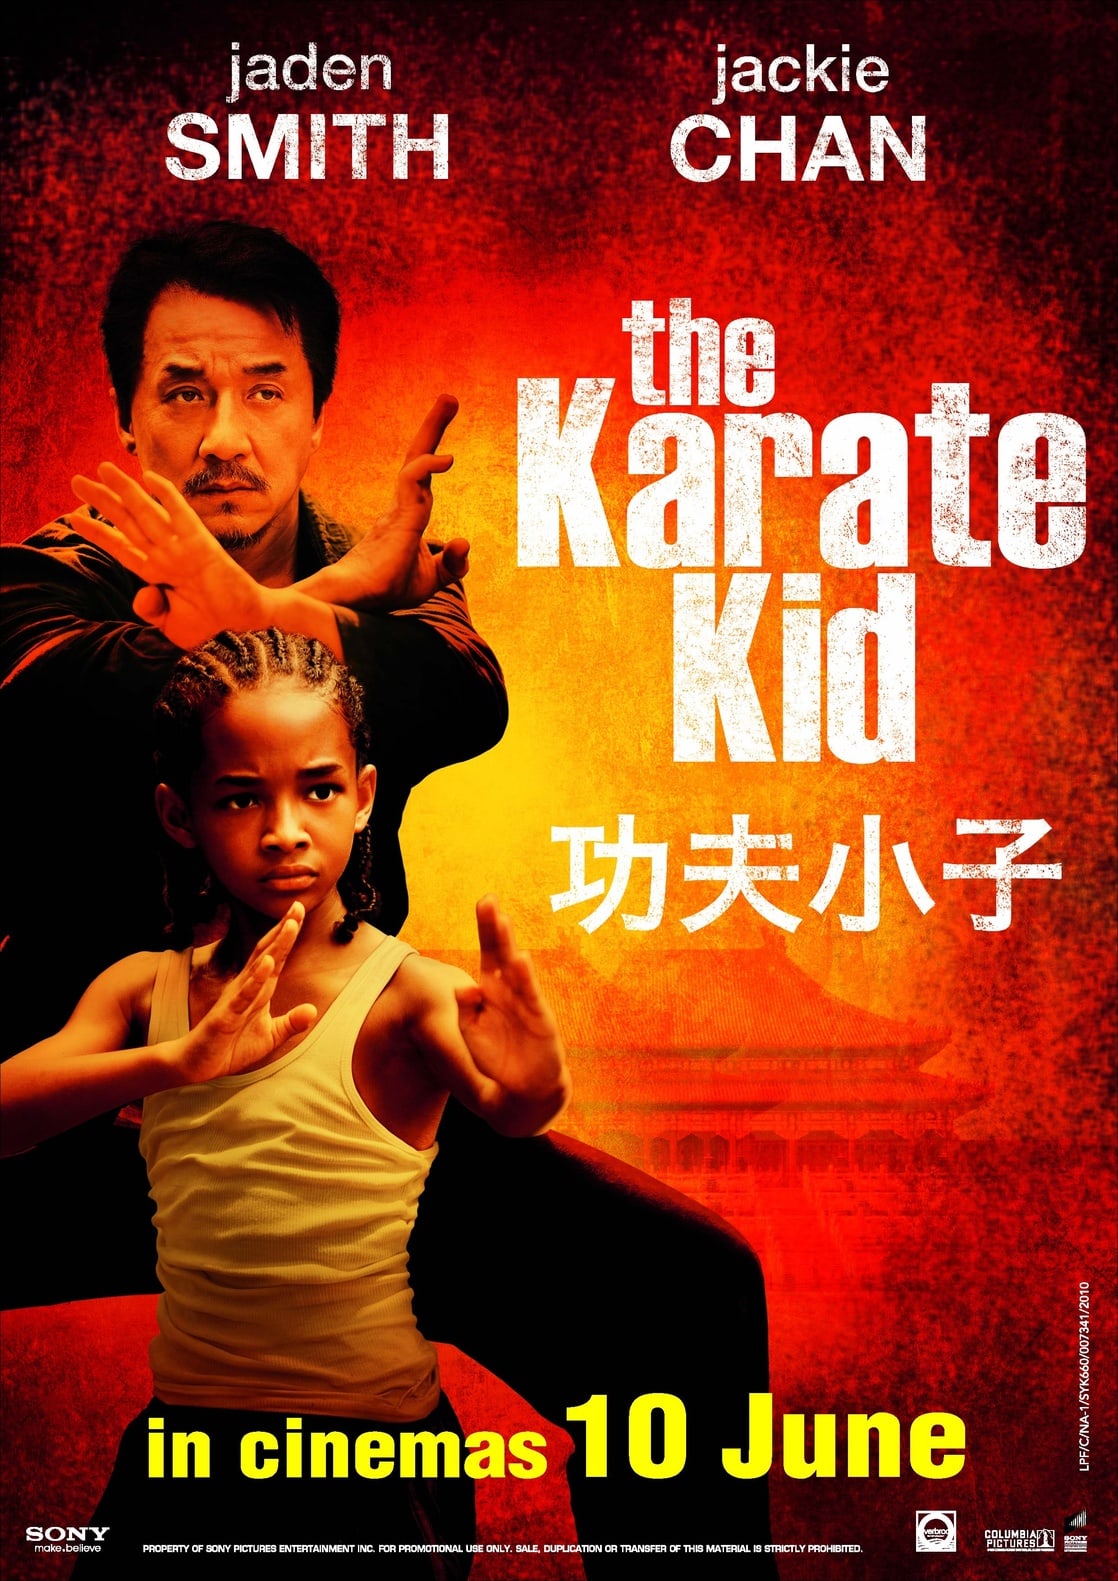 The Karate Kid Torrent Download 2010 - heavyteen